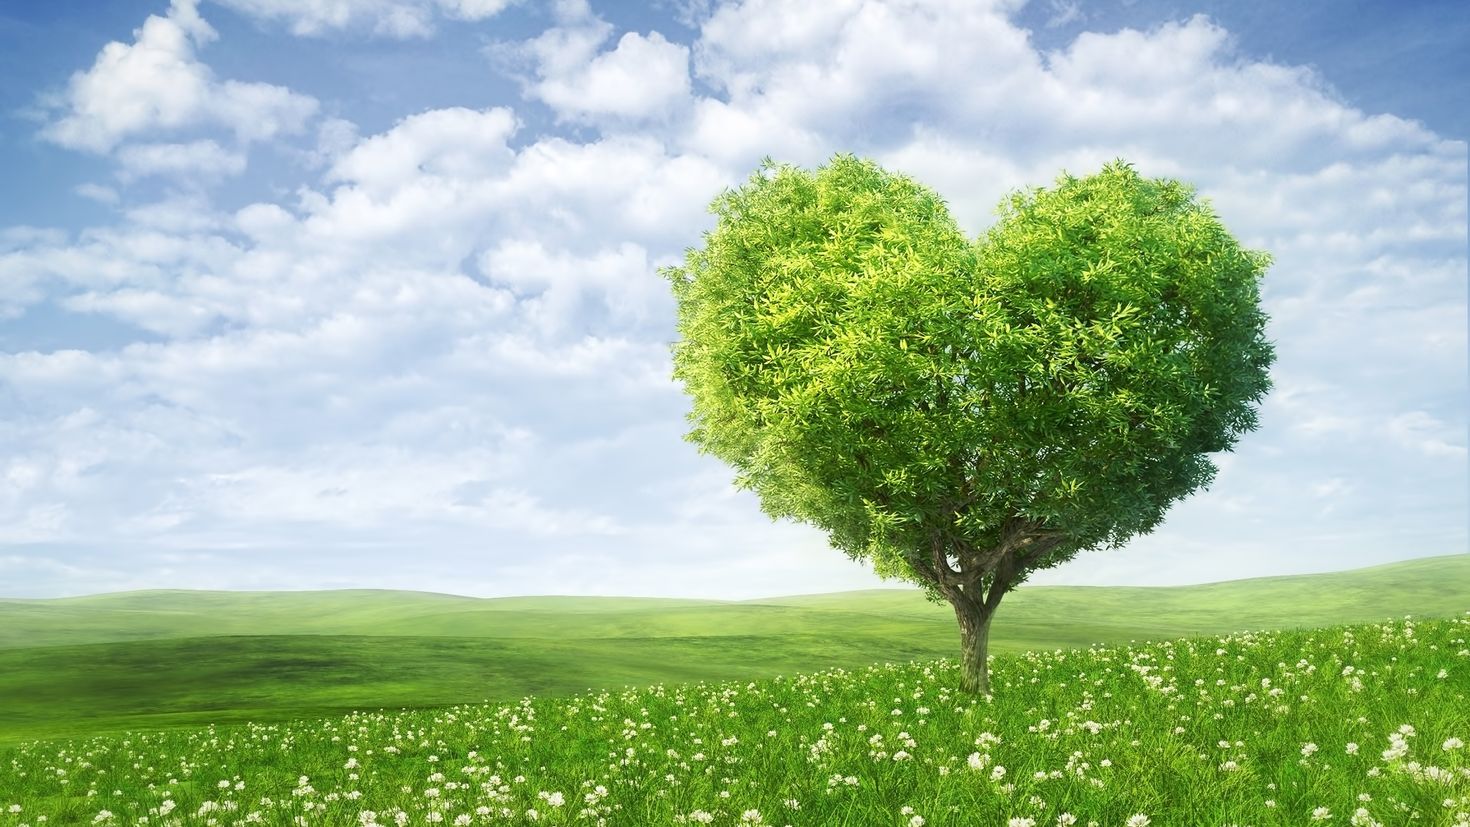 Тебя моя хорошая я больше всех люблю. Дерево сердце. Дерево зеленое. Красивое дерево сердце. Дерево в виде сердца.